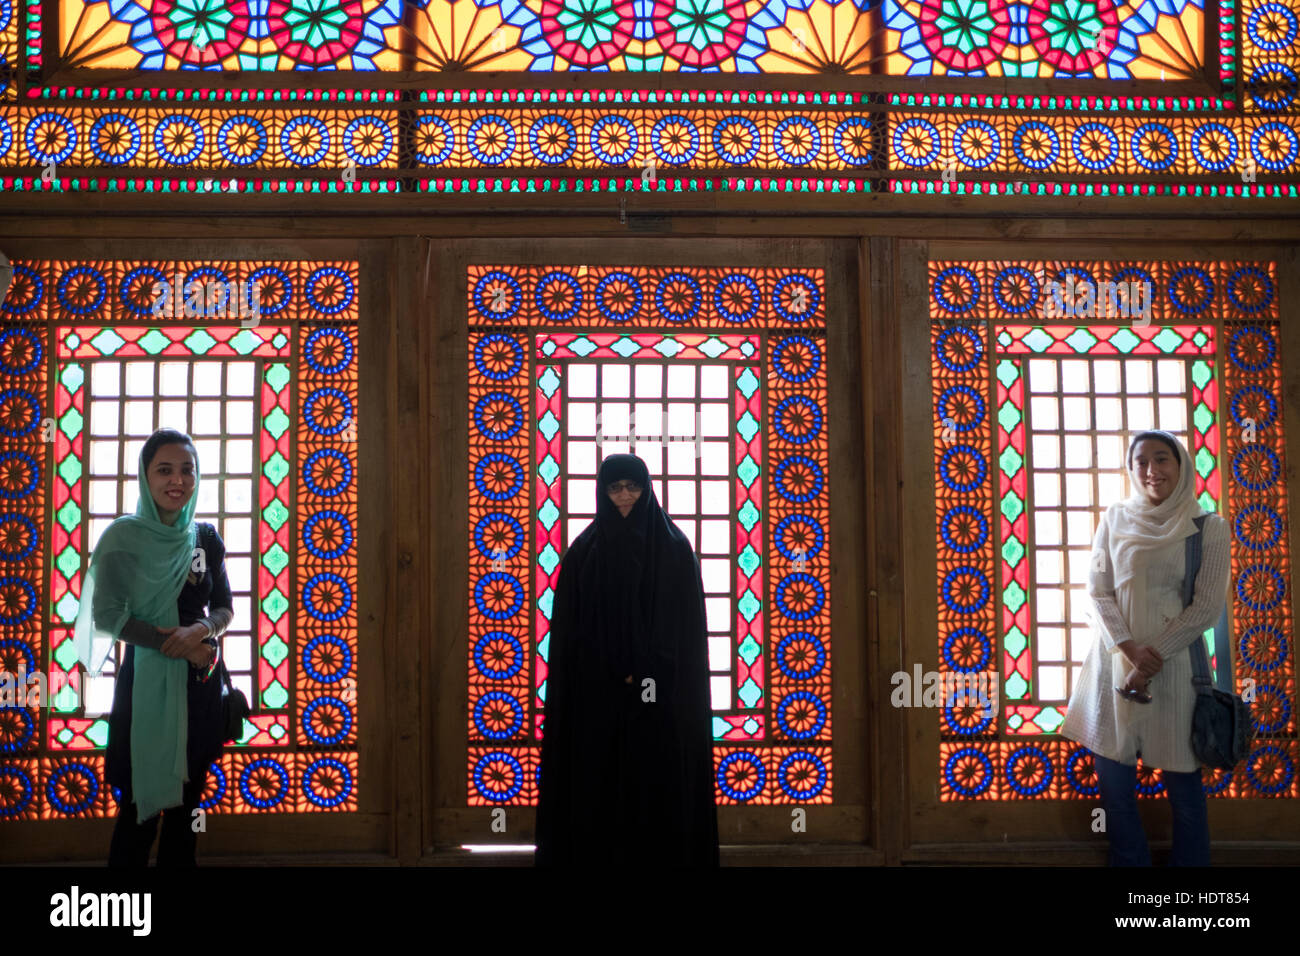 Les touristes posent devant les vitraux à l'intérieur de l'historique Maison Qavam à Shiraz, la province du Fars, Iran Banque D'Images